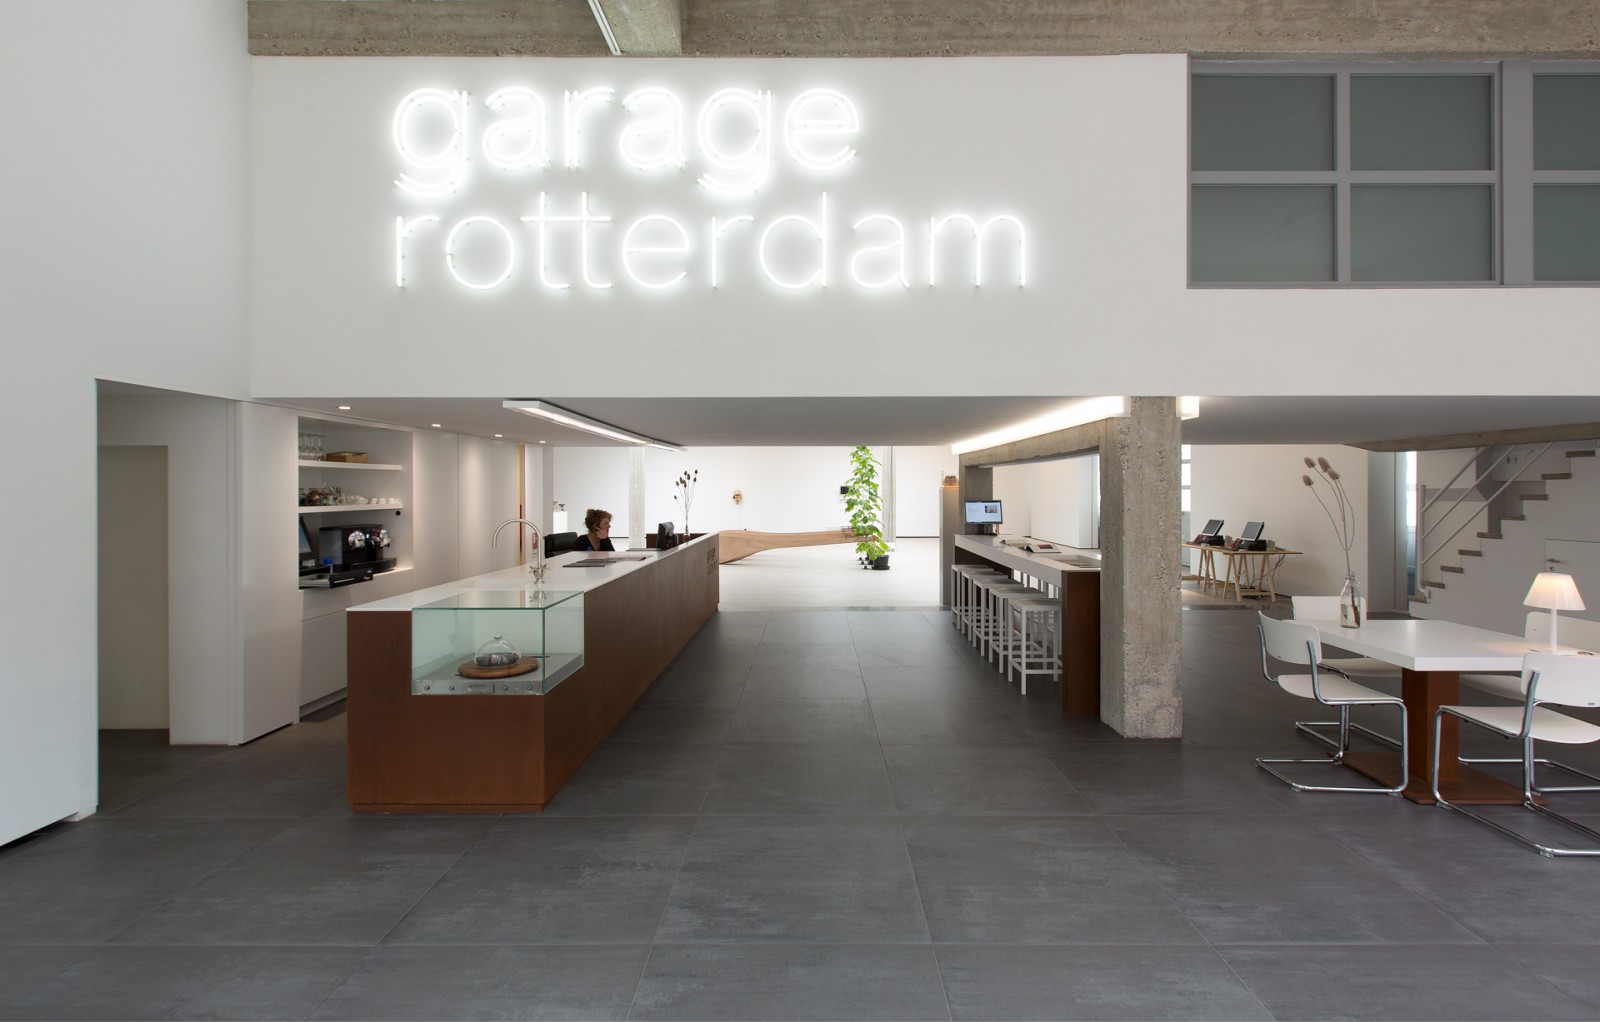 Garage Rotterdam